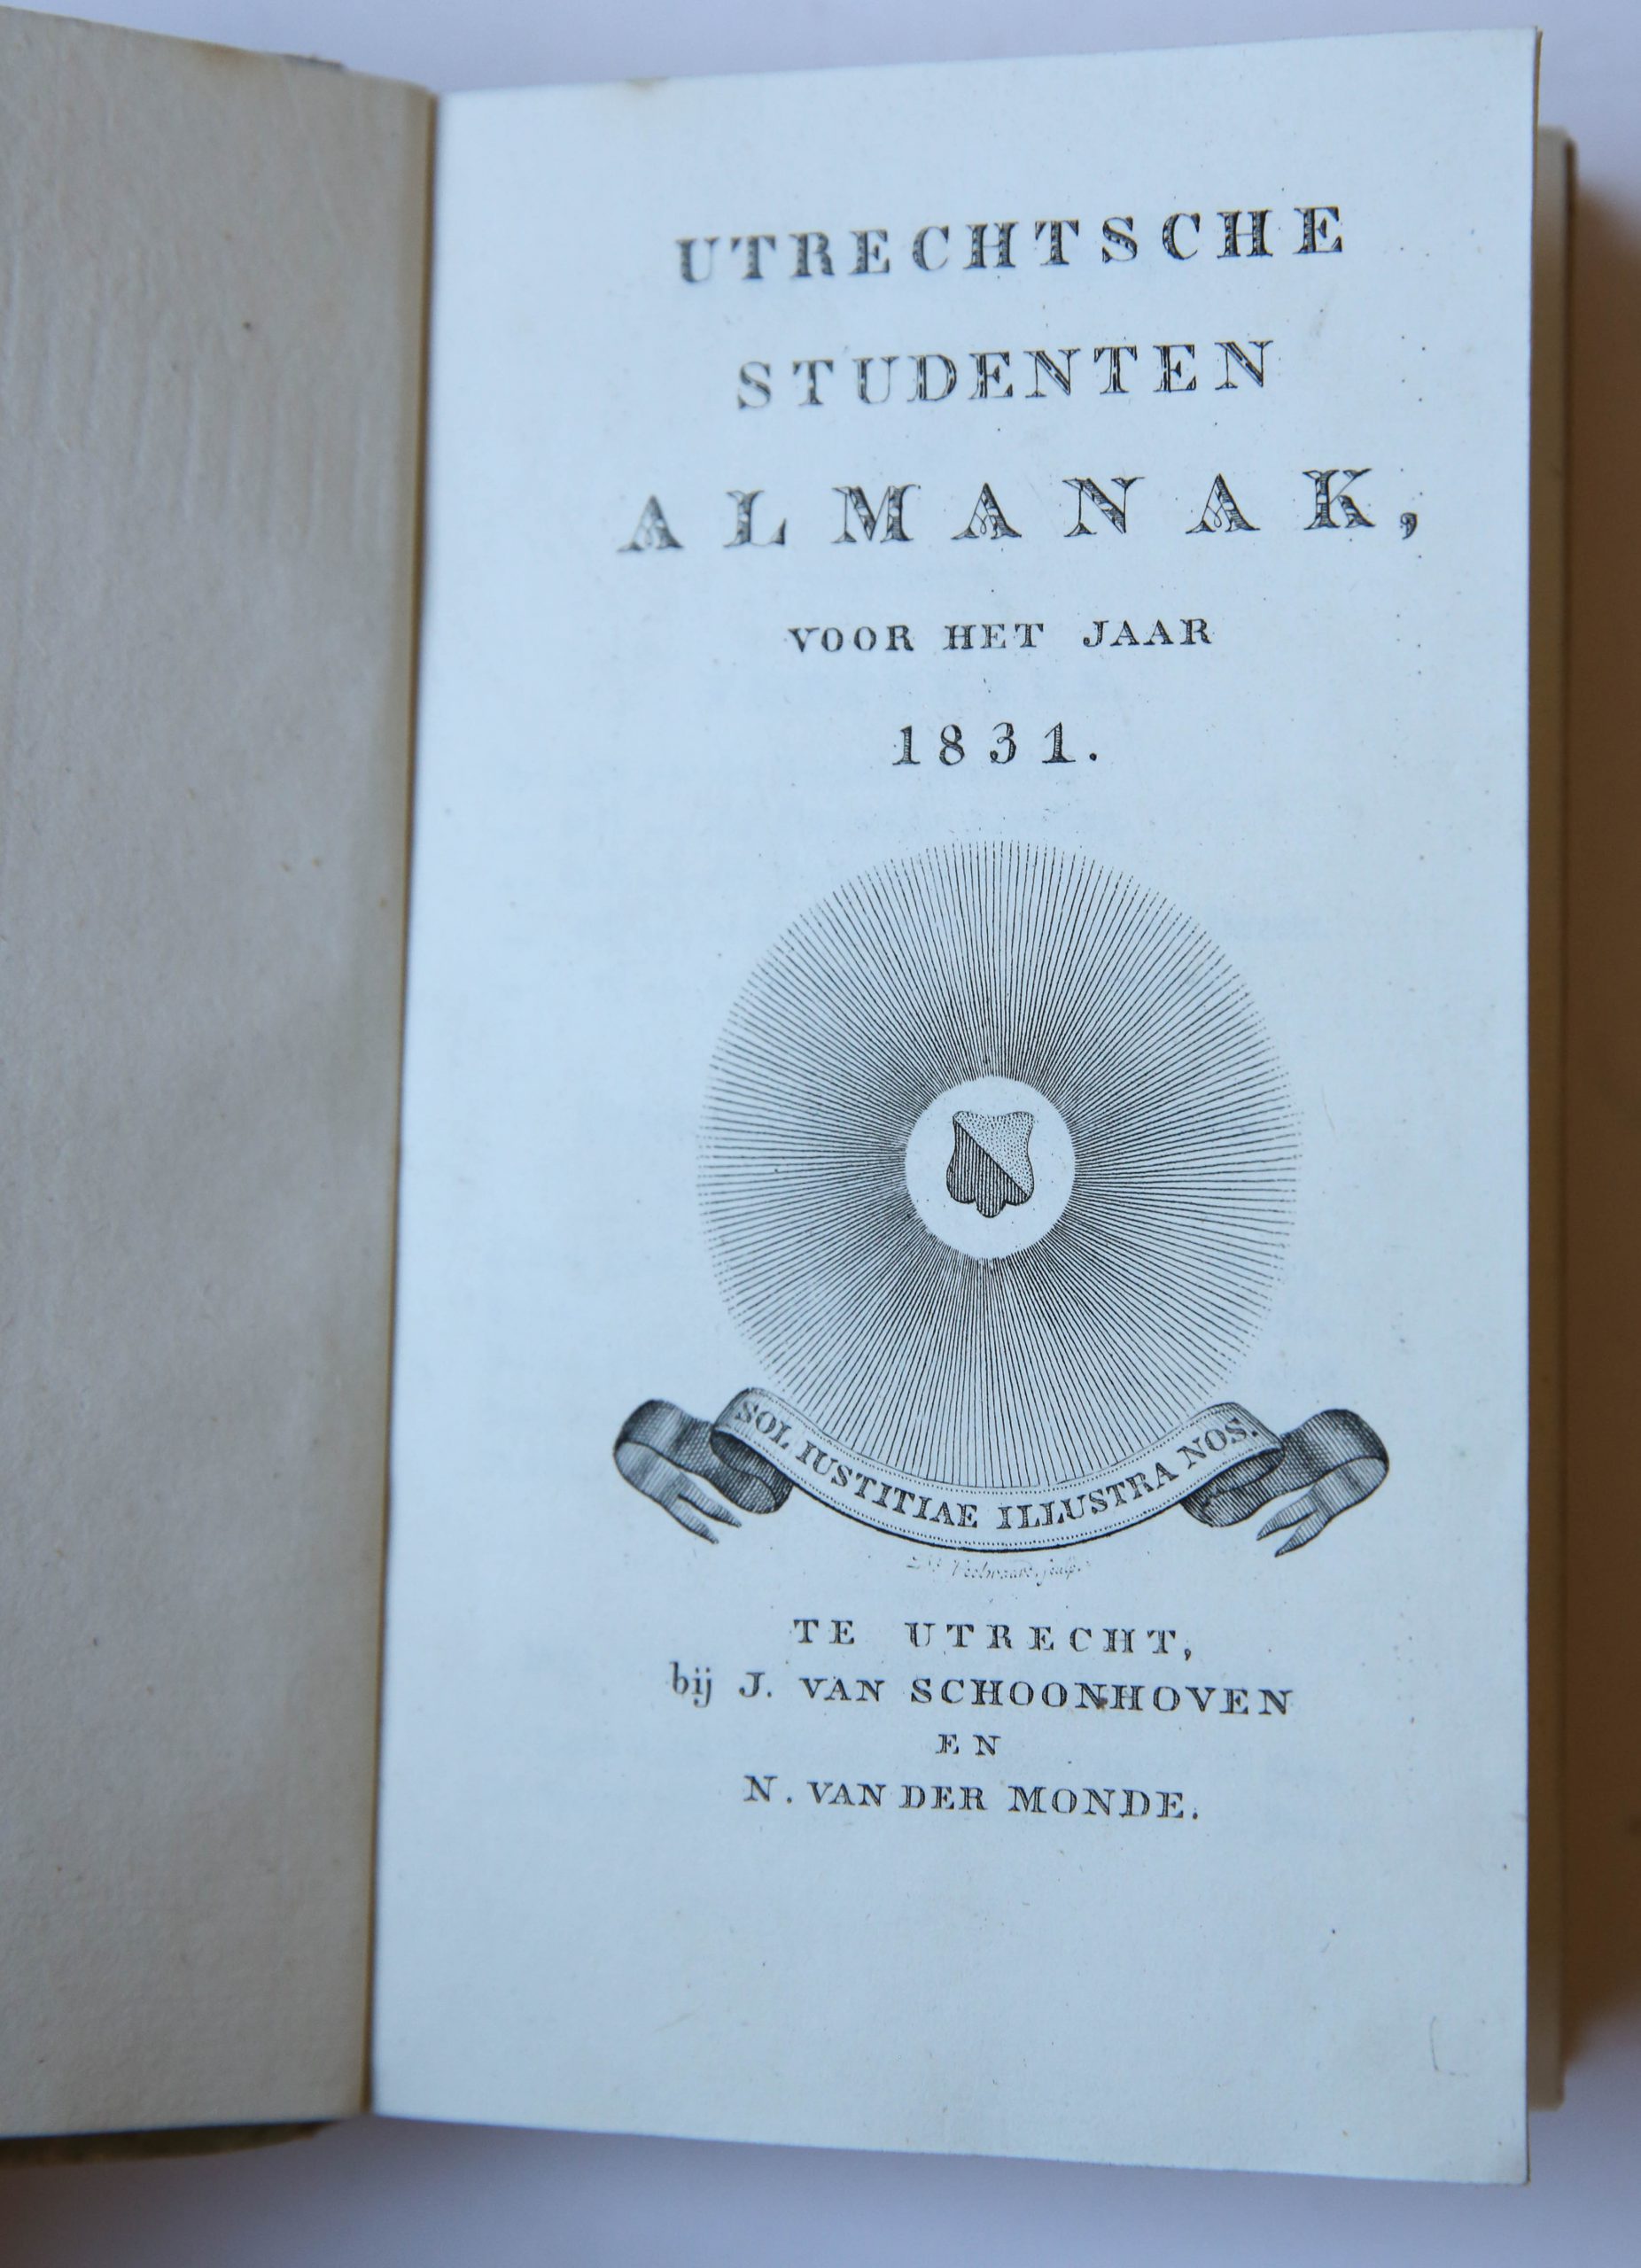 Utrechtsche Studenten Almanak voor het jaar 1831, Utrecht J. van Schoonhoven en N. van der Monde, 243 pp.